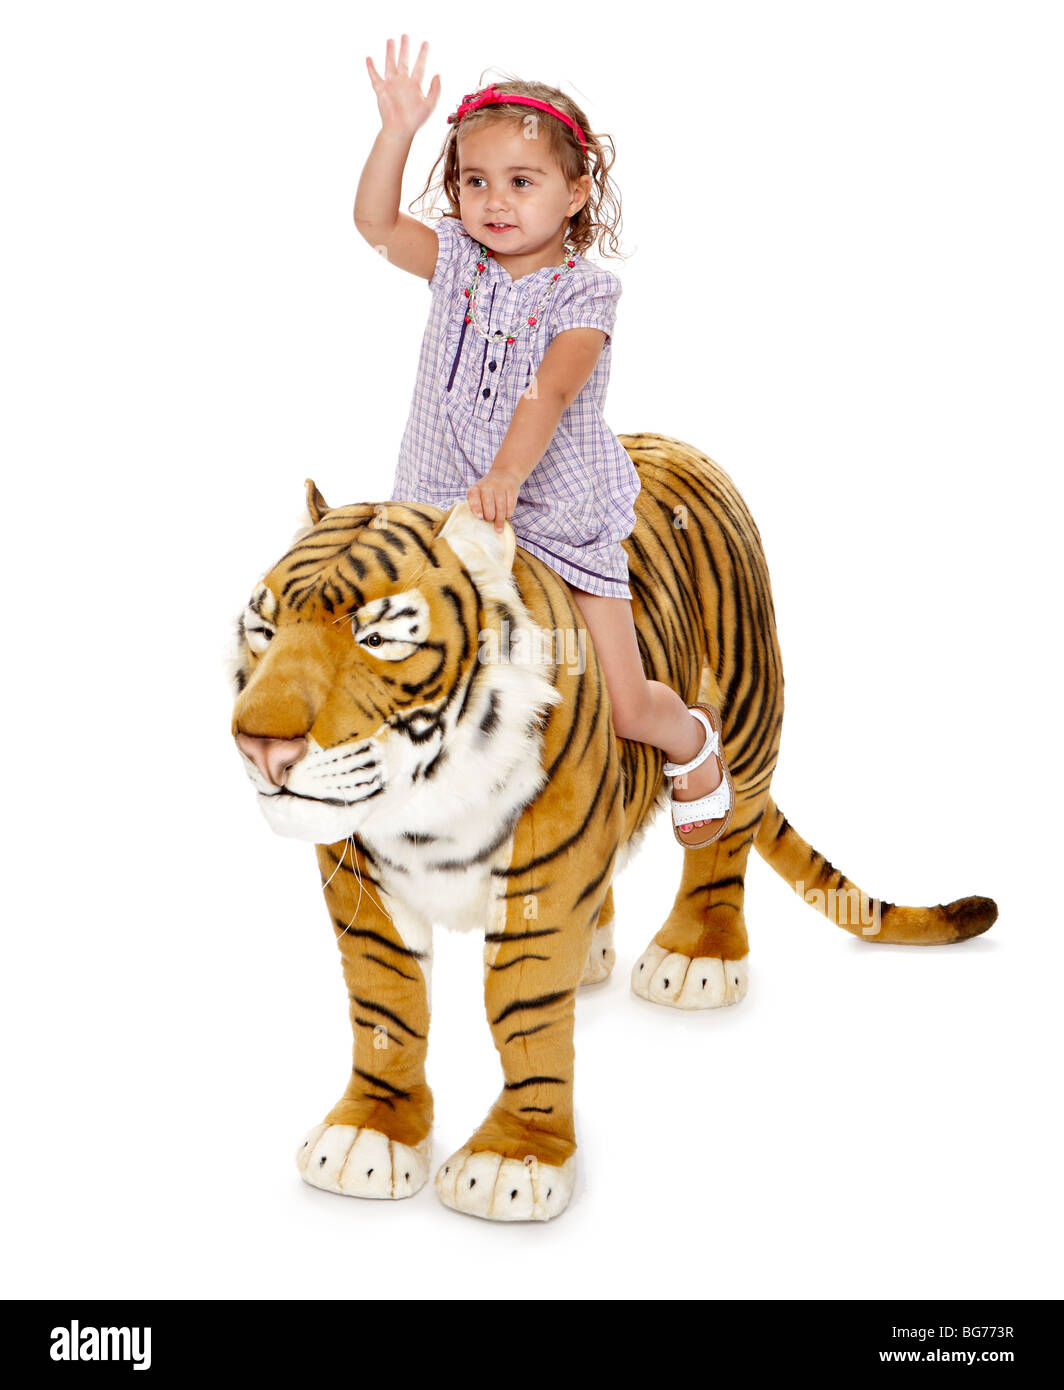 Toy tiger immagini e fotografie stock ad alta risoluzione - Alamy